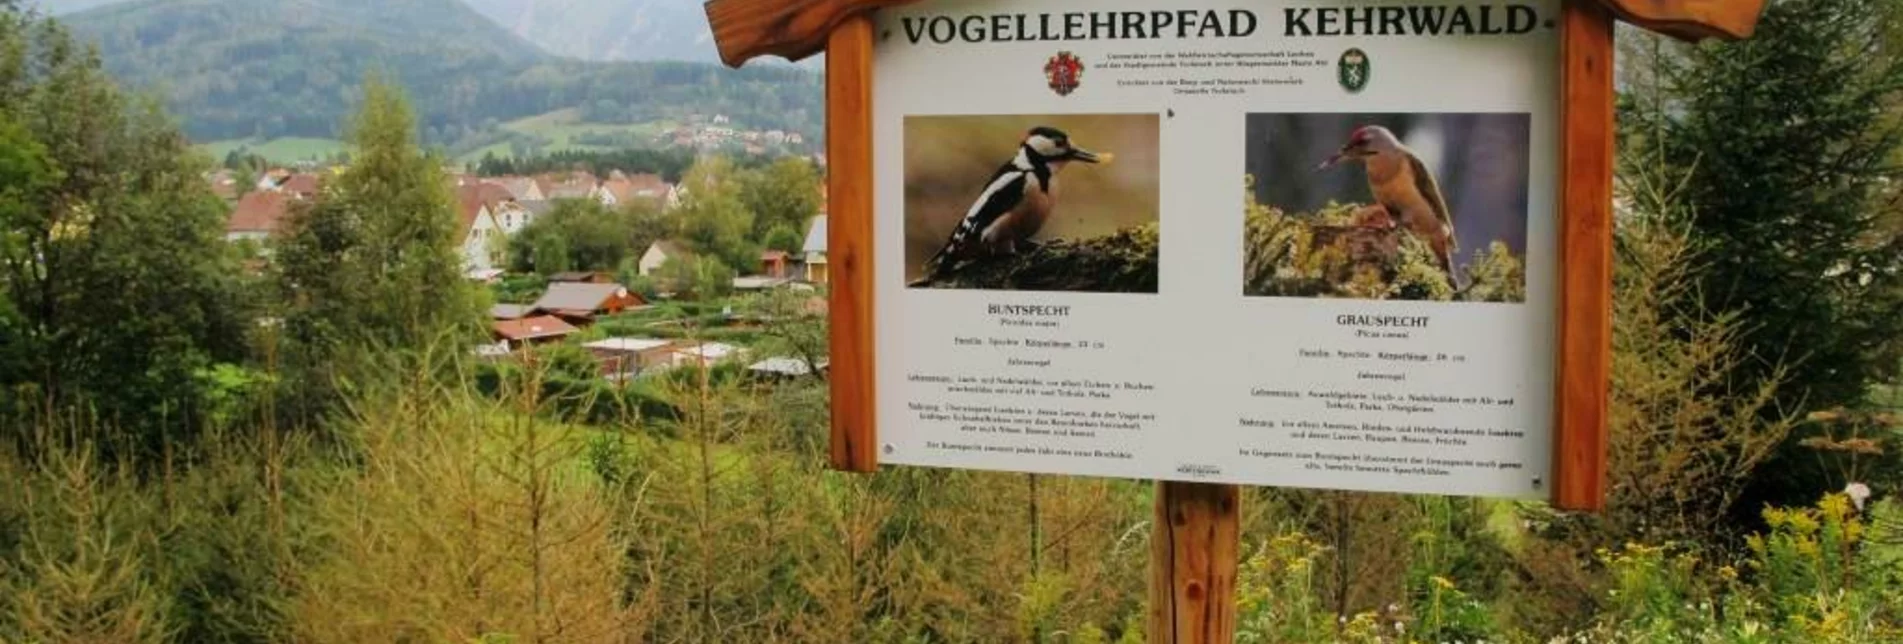 Themen- und Lehrpfad Vogellehrpfad Kehrwald - Touren-Impression #1 | © TV Hochsteiermark